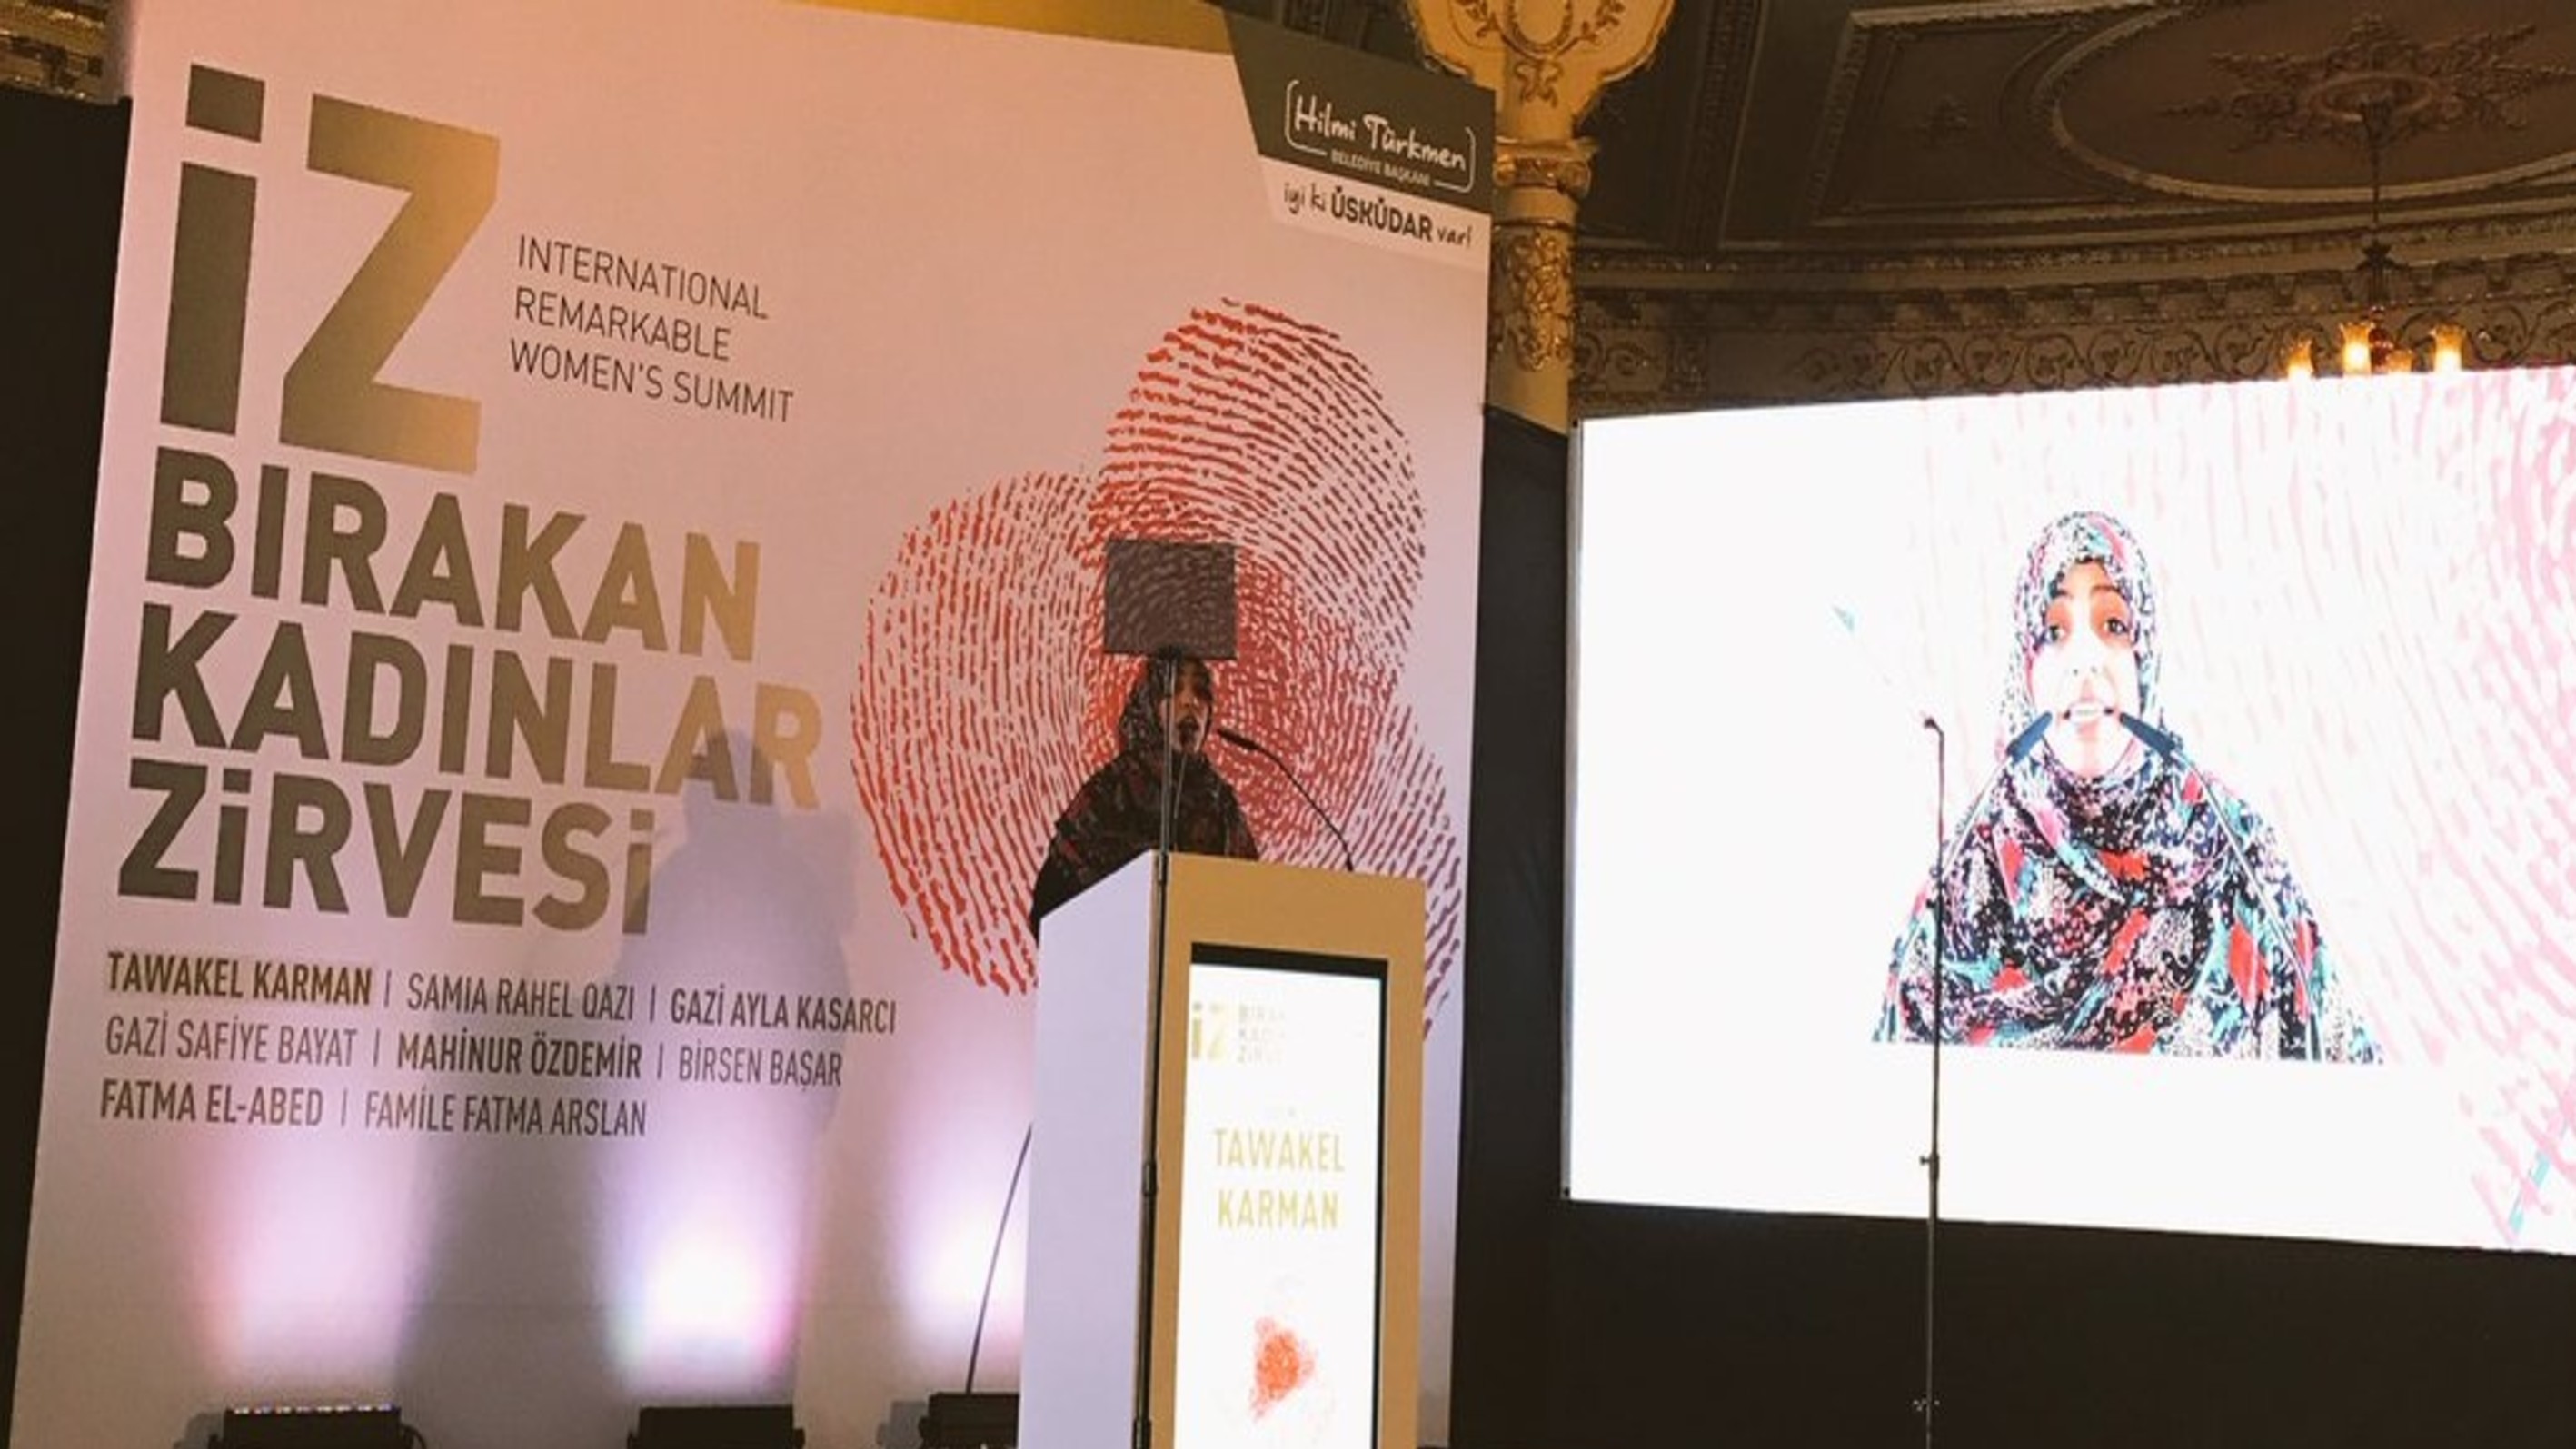 كلمة الناشطة الحائزة على جائزة نوبل للسلام توكل كرمان خلال الجلسة الافتتاحية للقمة الدولية للمرأة - اسطنبول